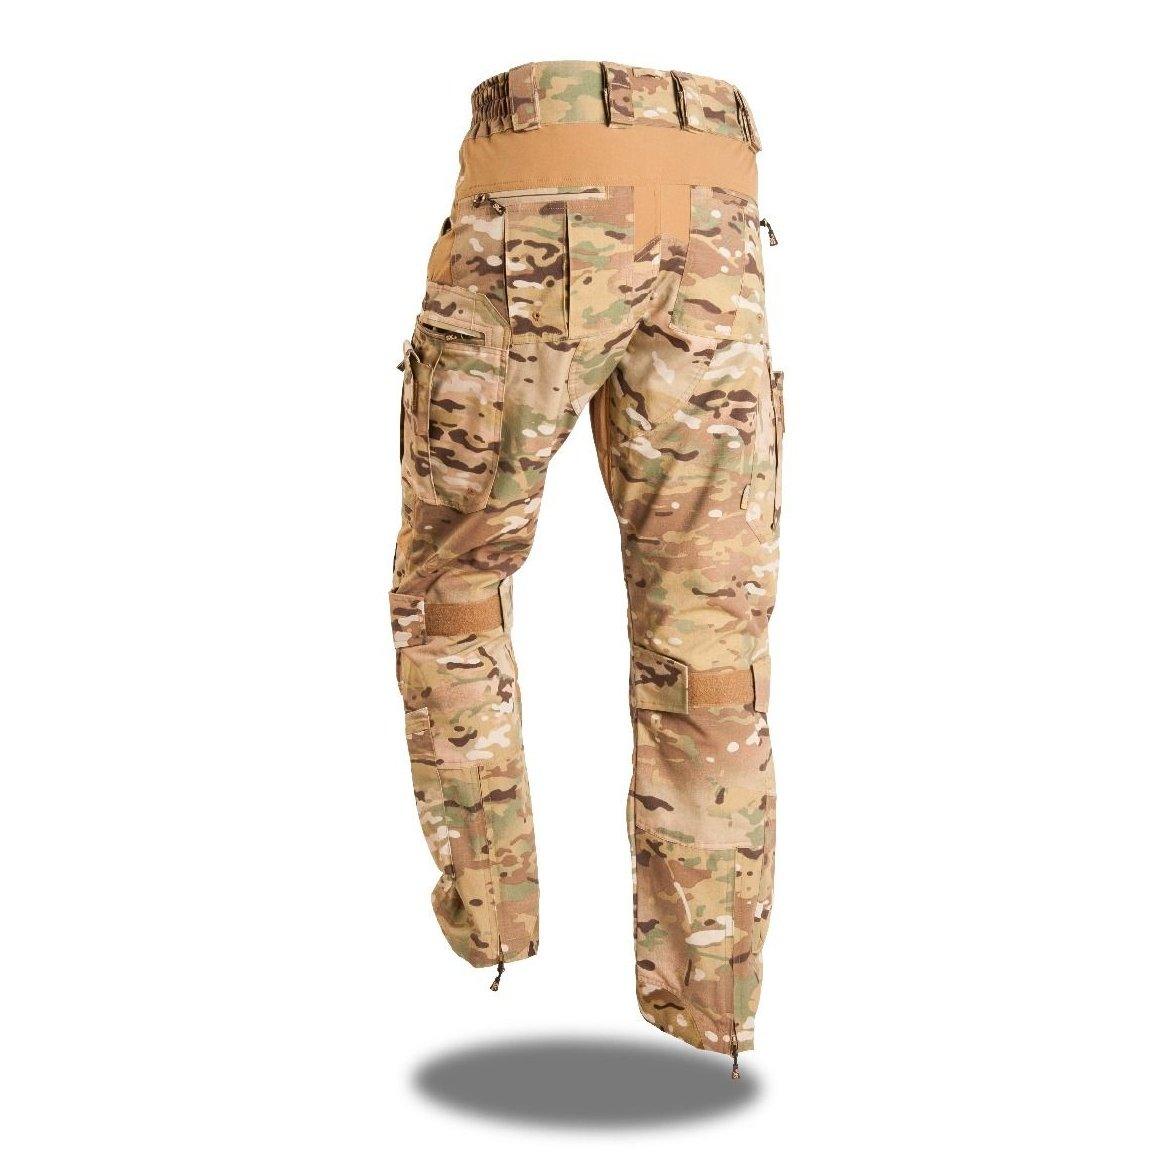 SK7 EON R Tactical Pant - MULTICAM - Sizes 30"-38" - Vendor